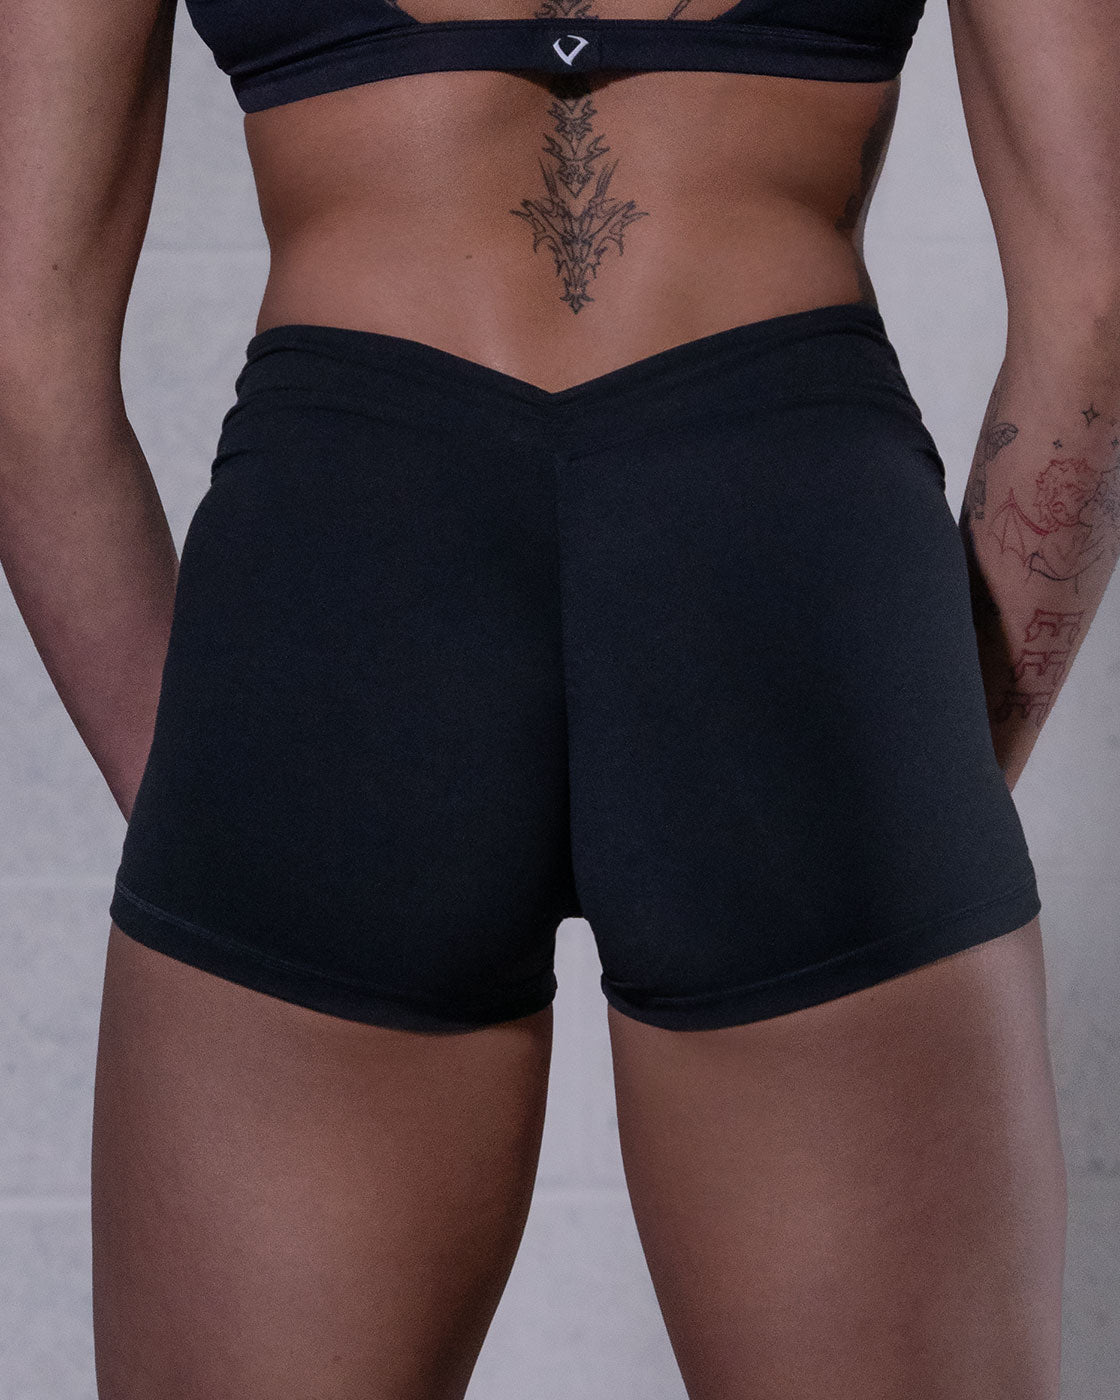 Allure V Back Shorts - Black